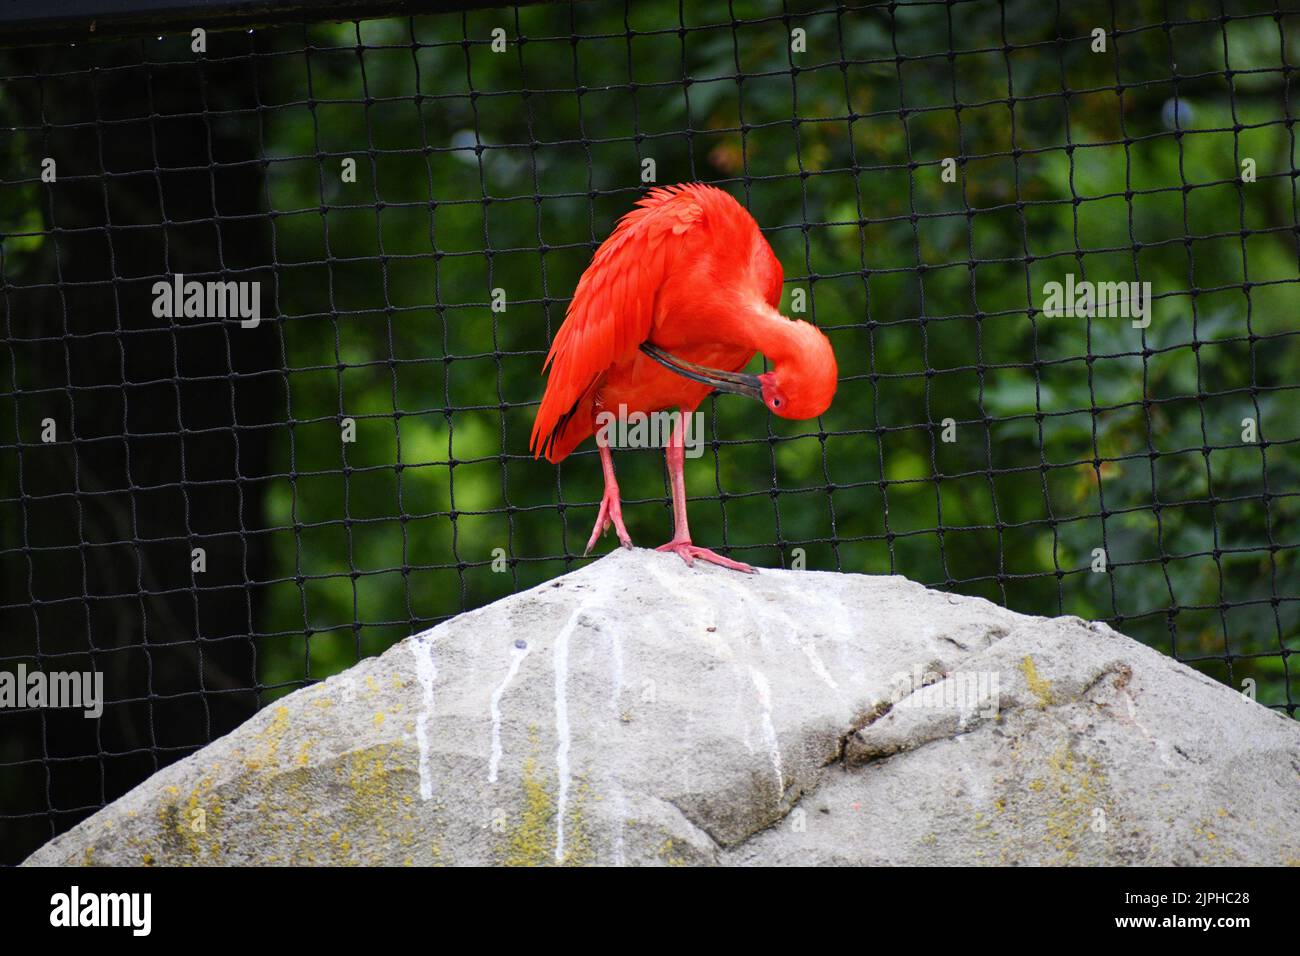 Oiseau long orange élégant Banque D'Images